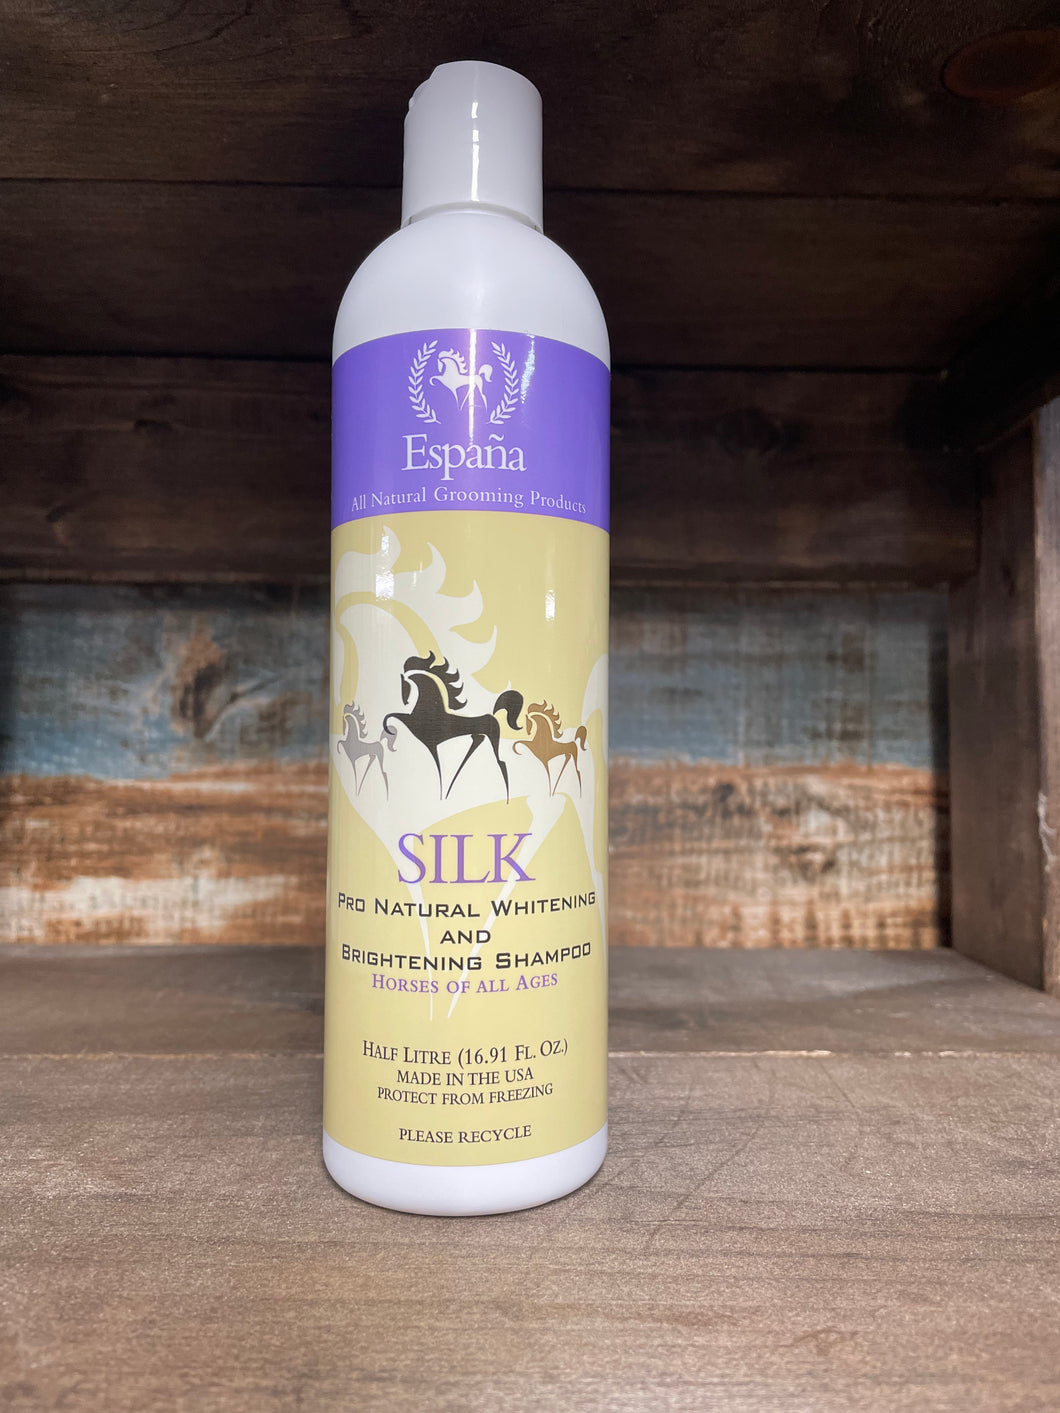 Espana Silk Whitening and Brightening Shampoo